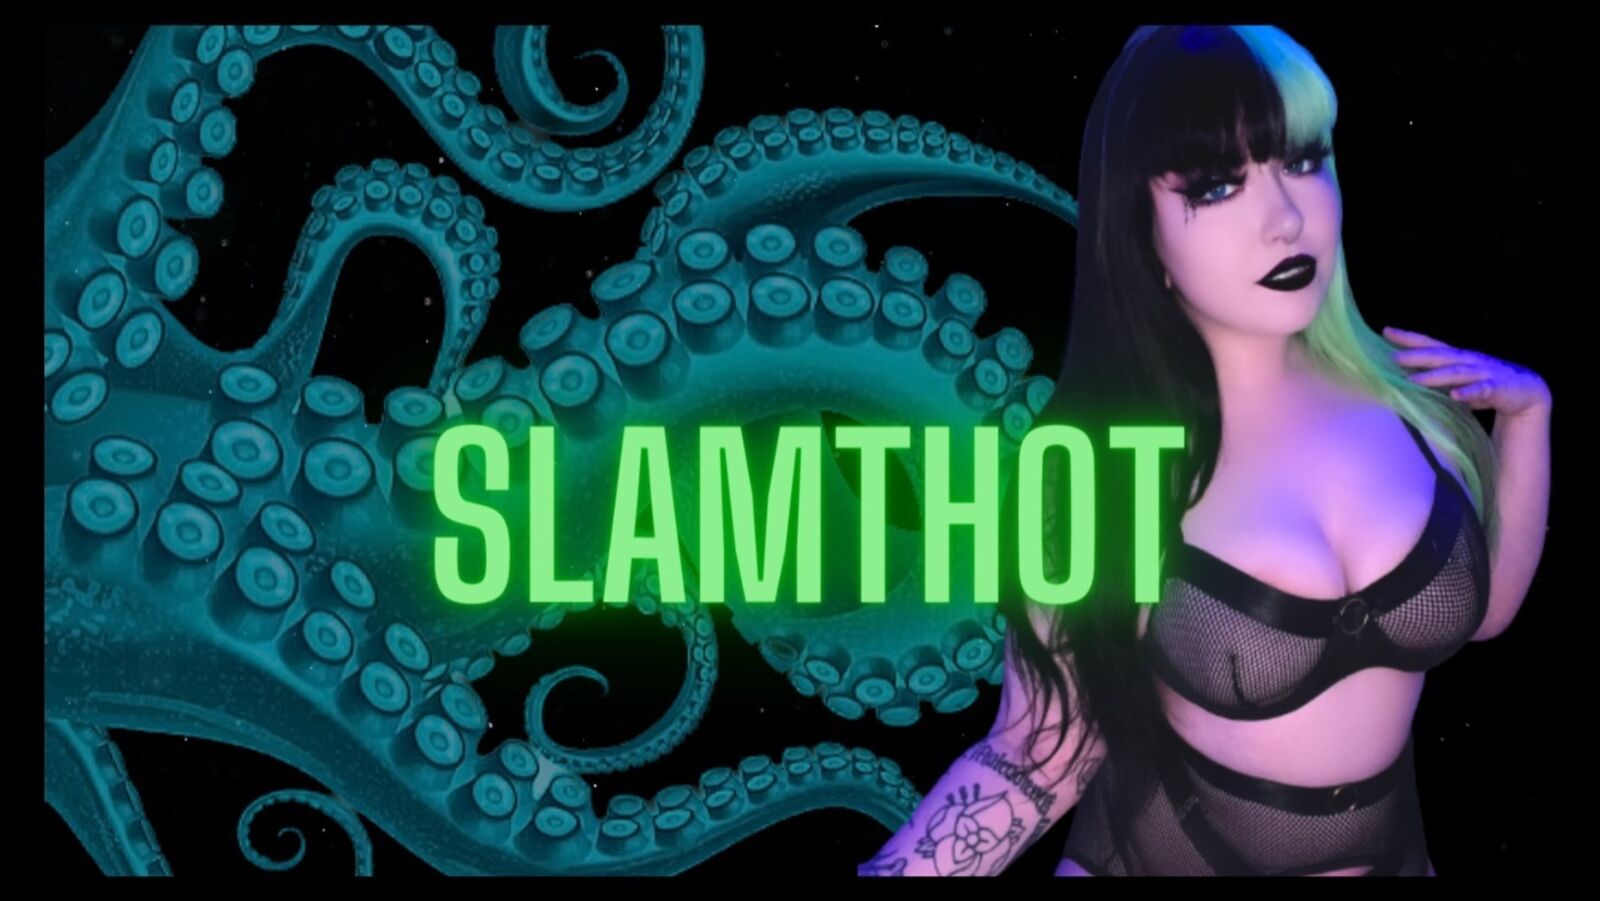 See Slam Thot profile